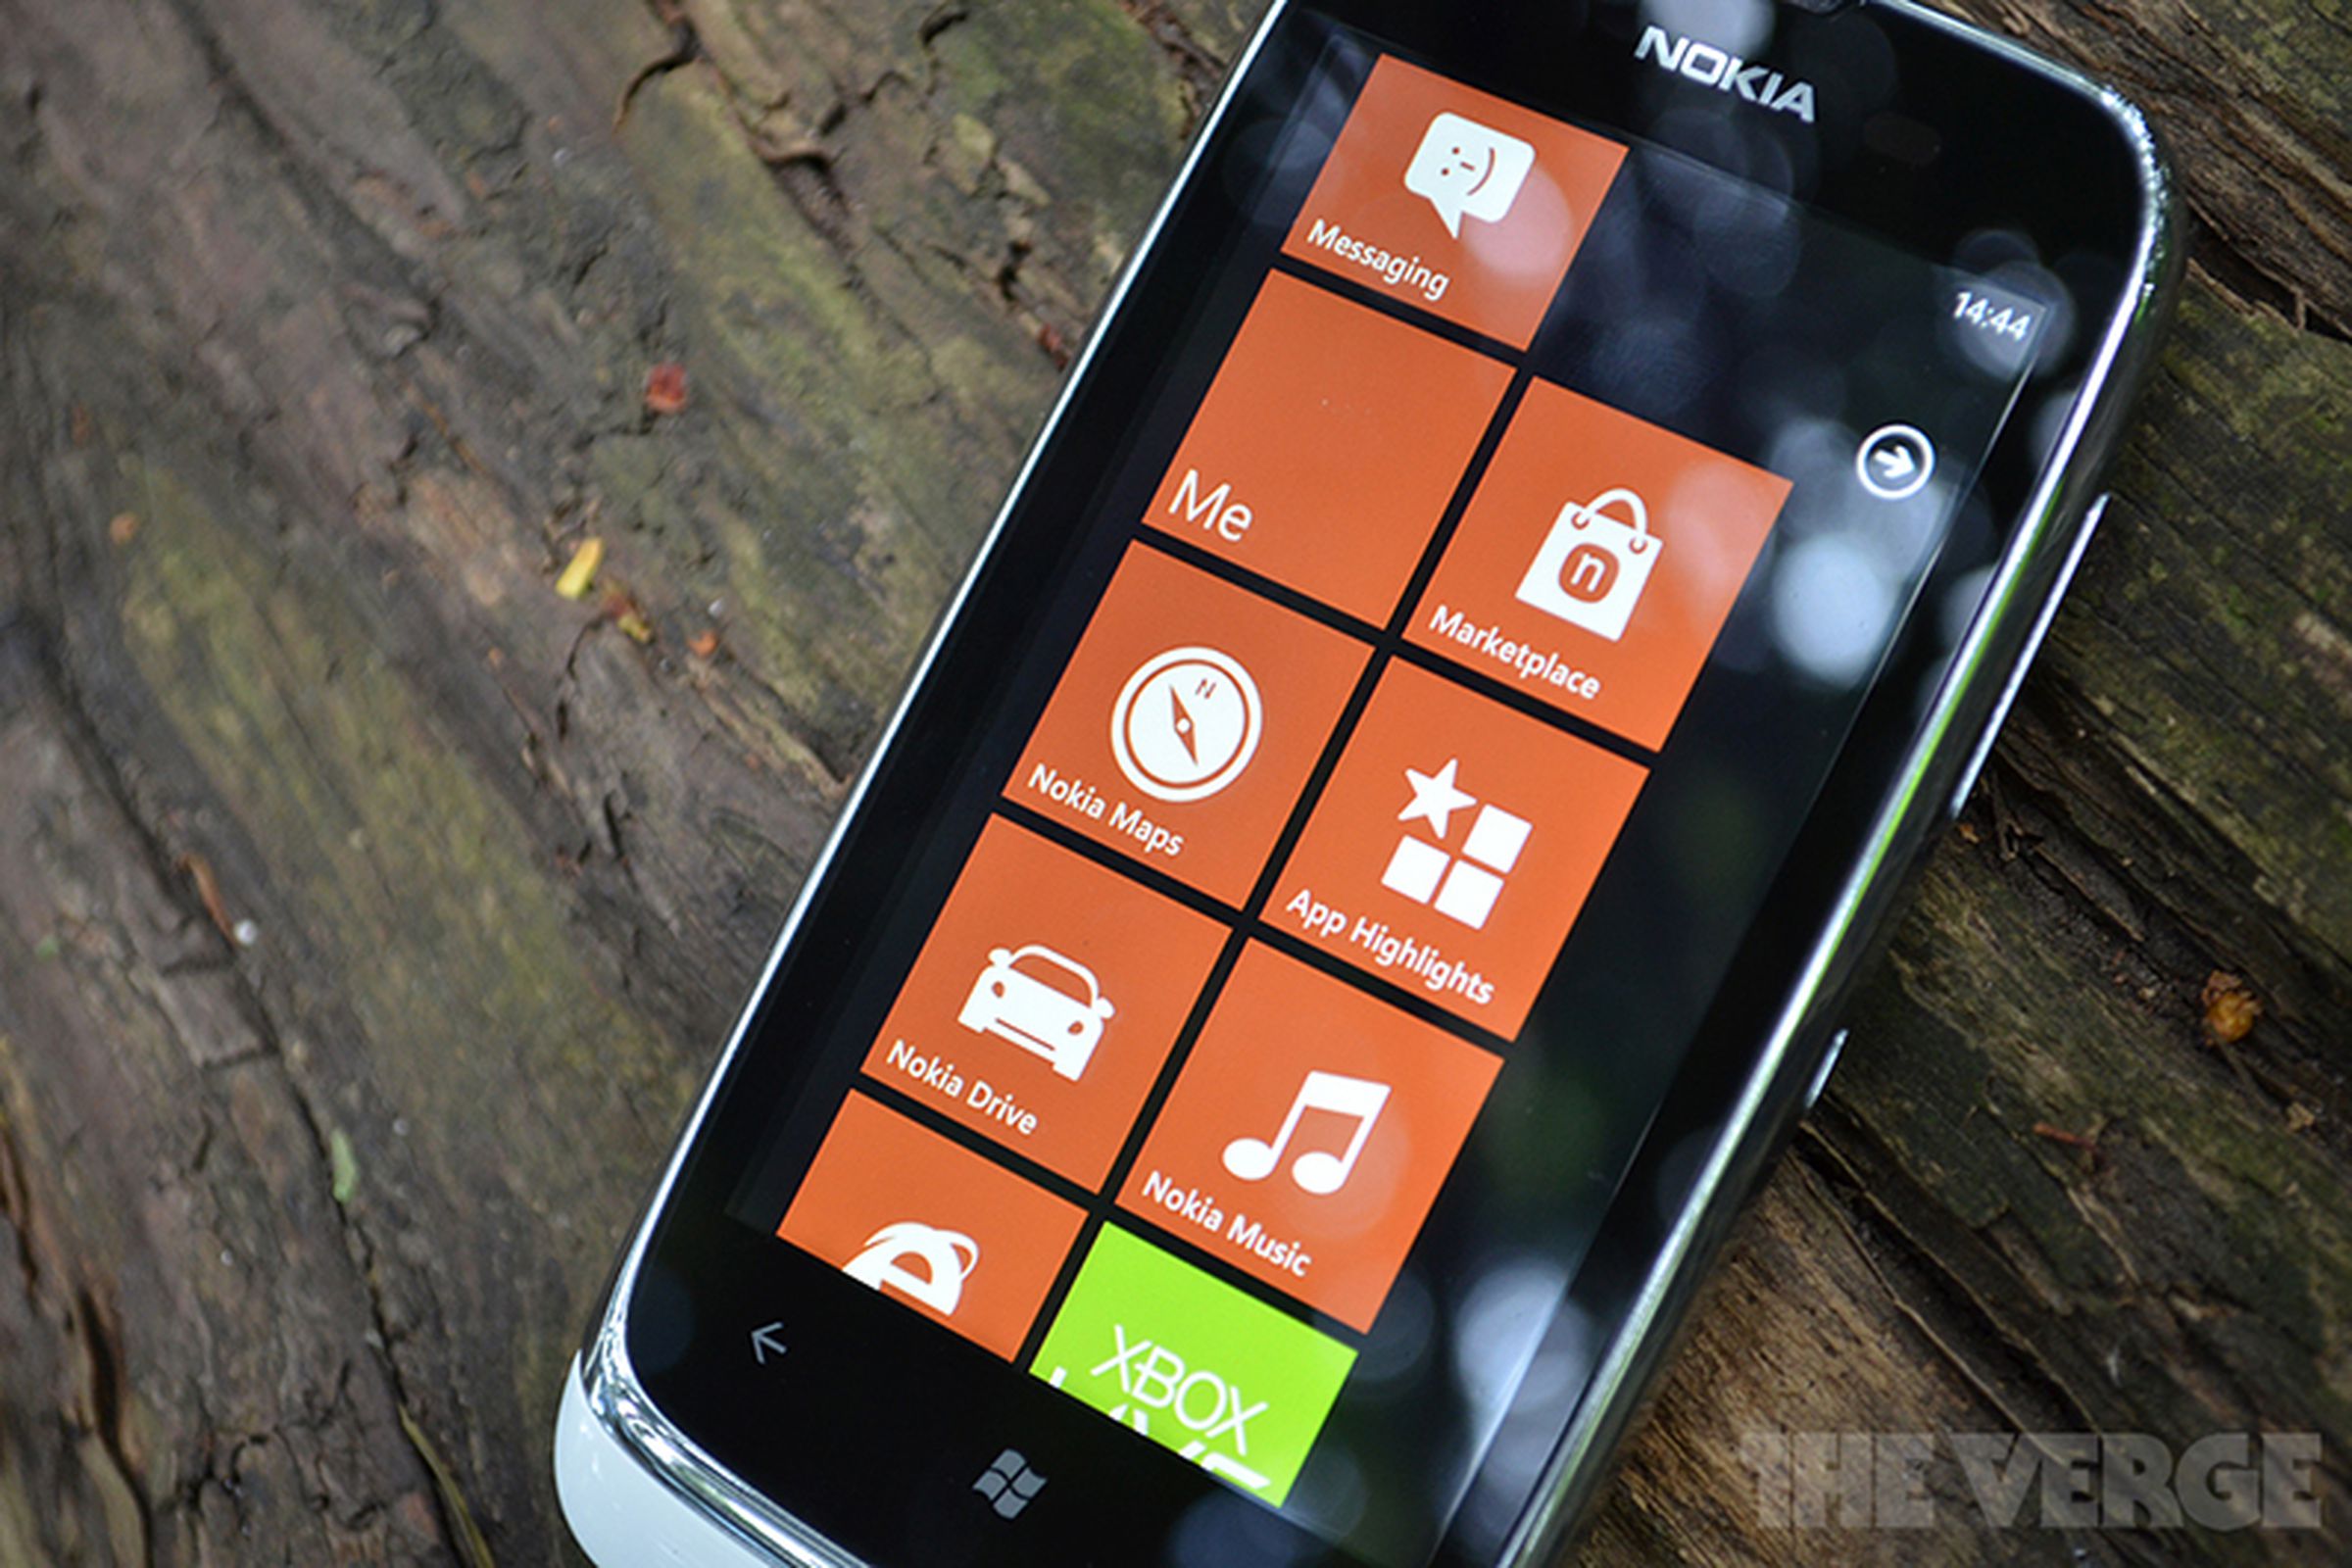 Nokia Lumia 610 review software